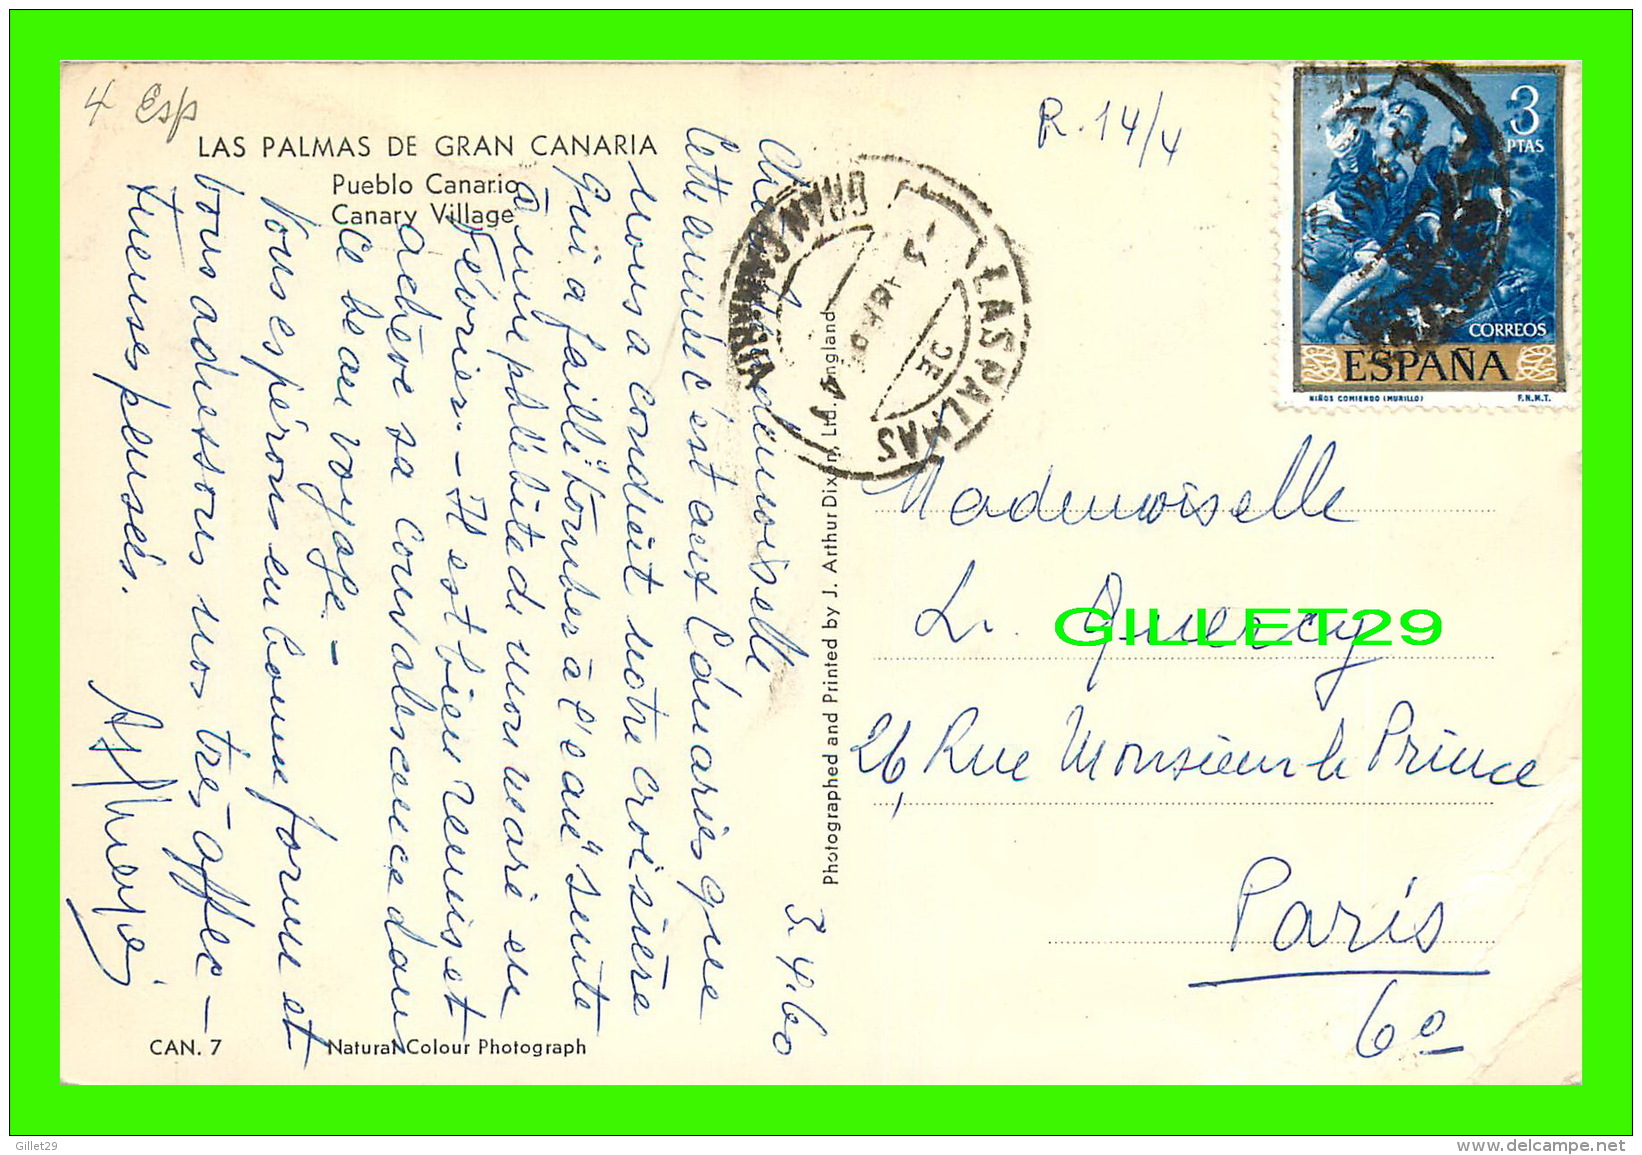 LAS PALMAS DE GRAN CANARIA - PUEBLO CANARIO - CANARY VILLAGE - TRAVEL IN 1960 - J. ARTHUR DIXON LTD - - La Palma